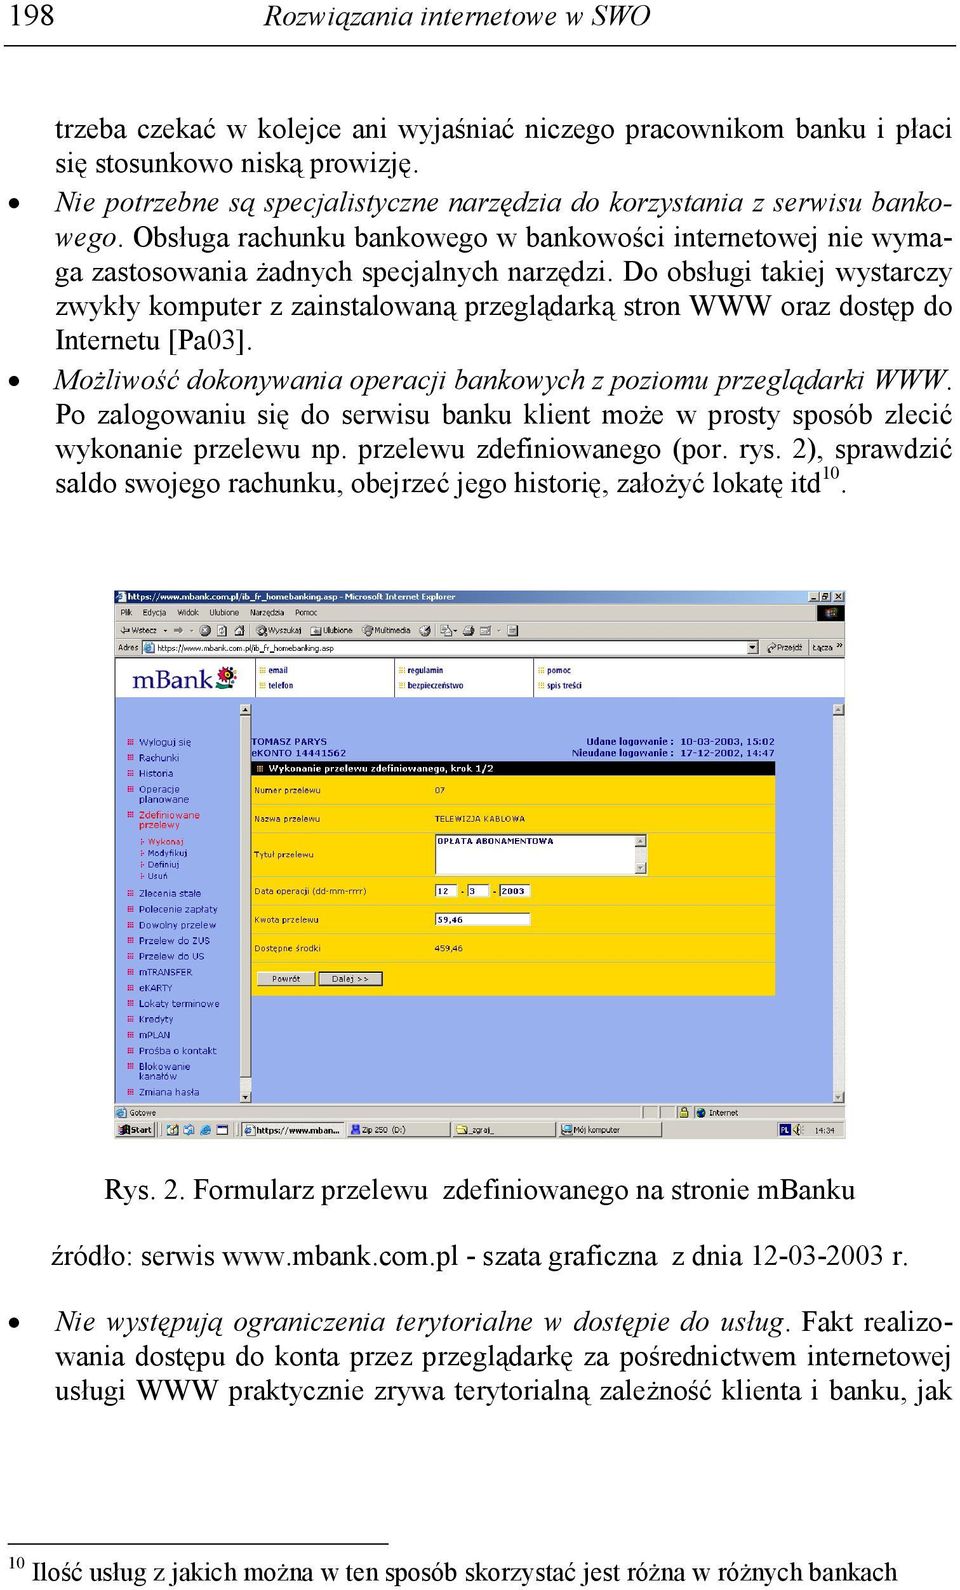 Do obsługi takiej wystarczy zwykły komputer z zainstalowaną przeglądarką stron WWW oraz dostęp do Internetu [Pa03]. MoŜliwość dokonywania operacji bankowych z poziomu przeglądarki WWW.